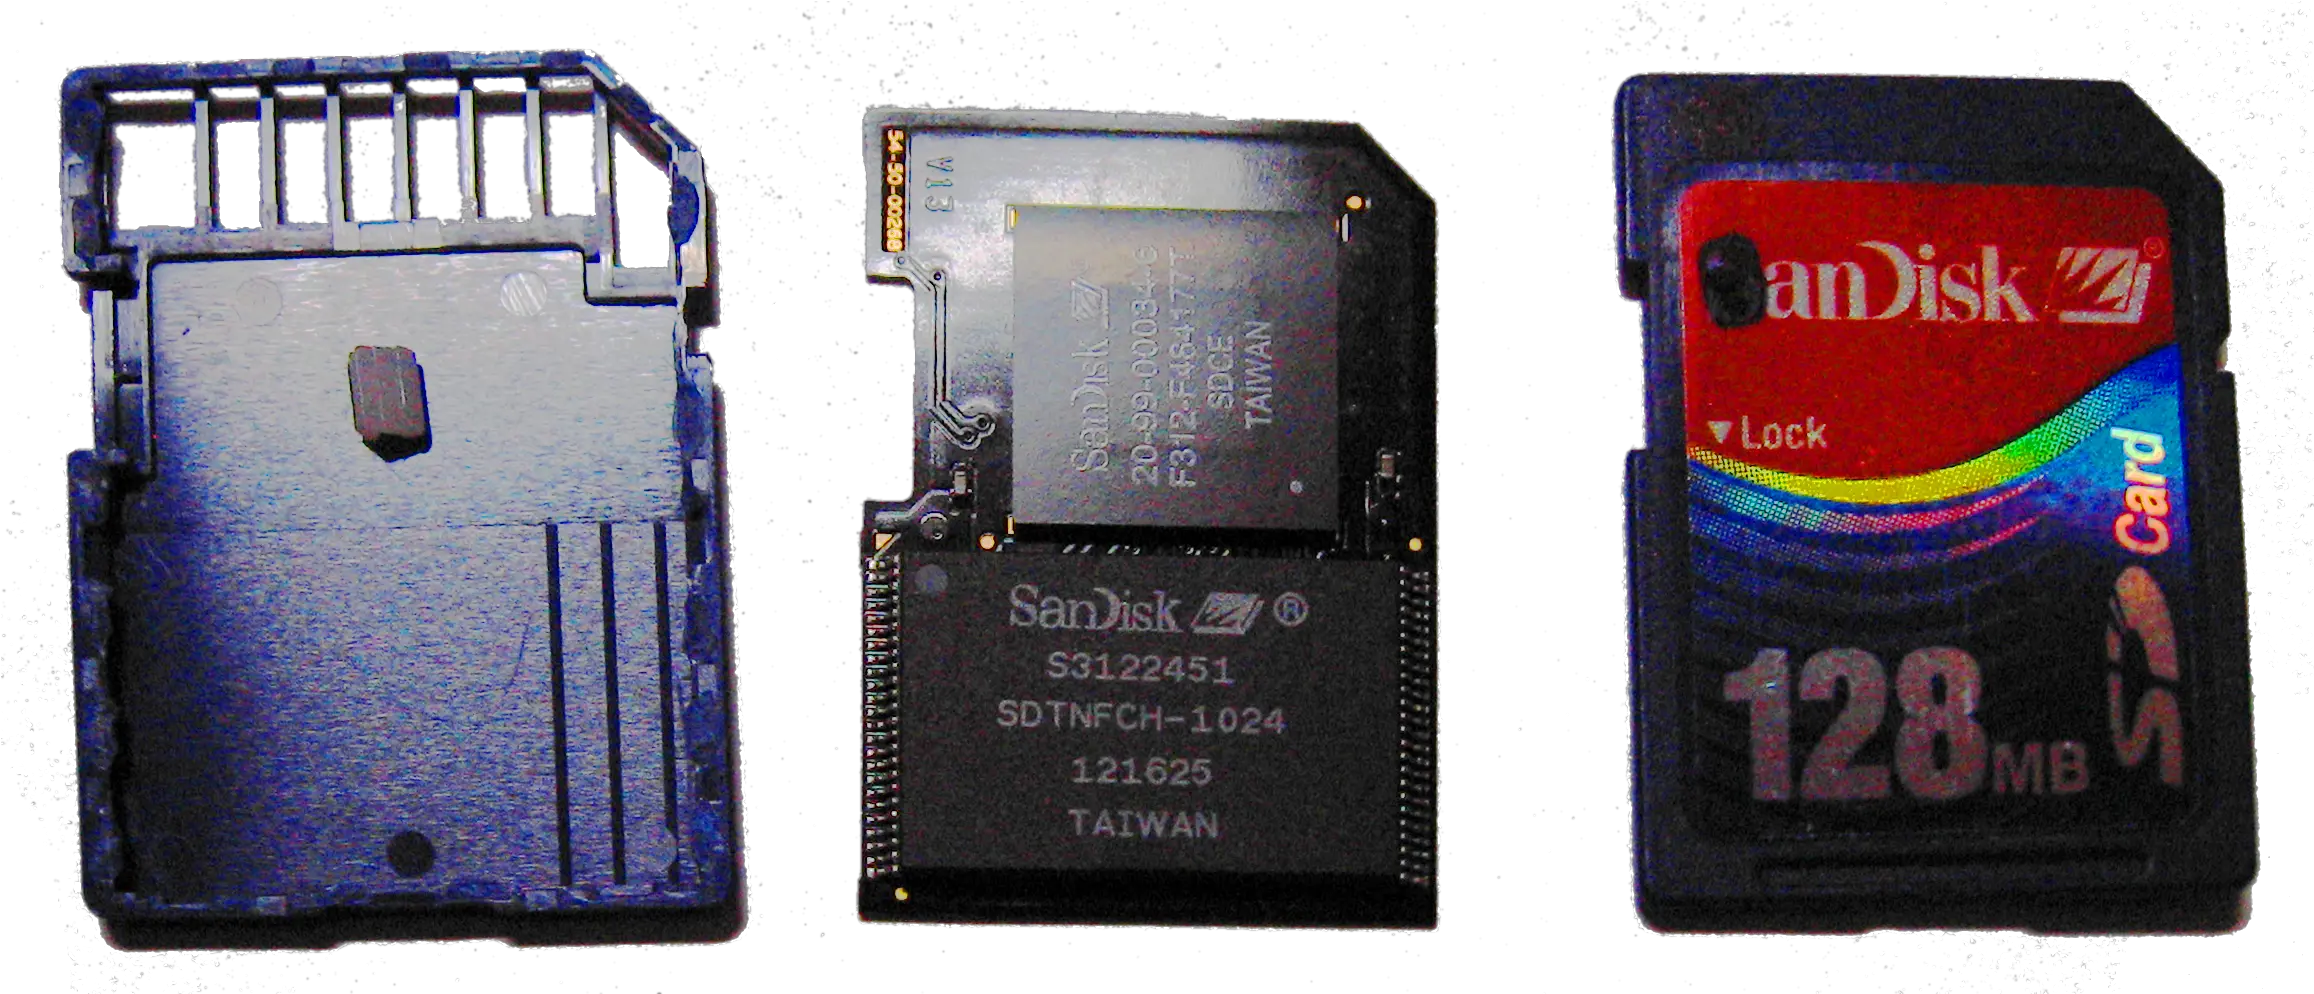 Sandisk 128mb Sd Card Insides Sandisk 128mb Sd Card Png Sd Card Png